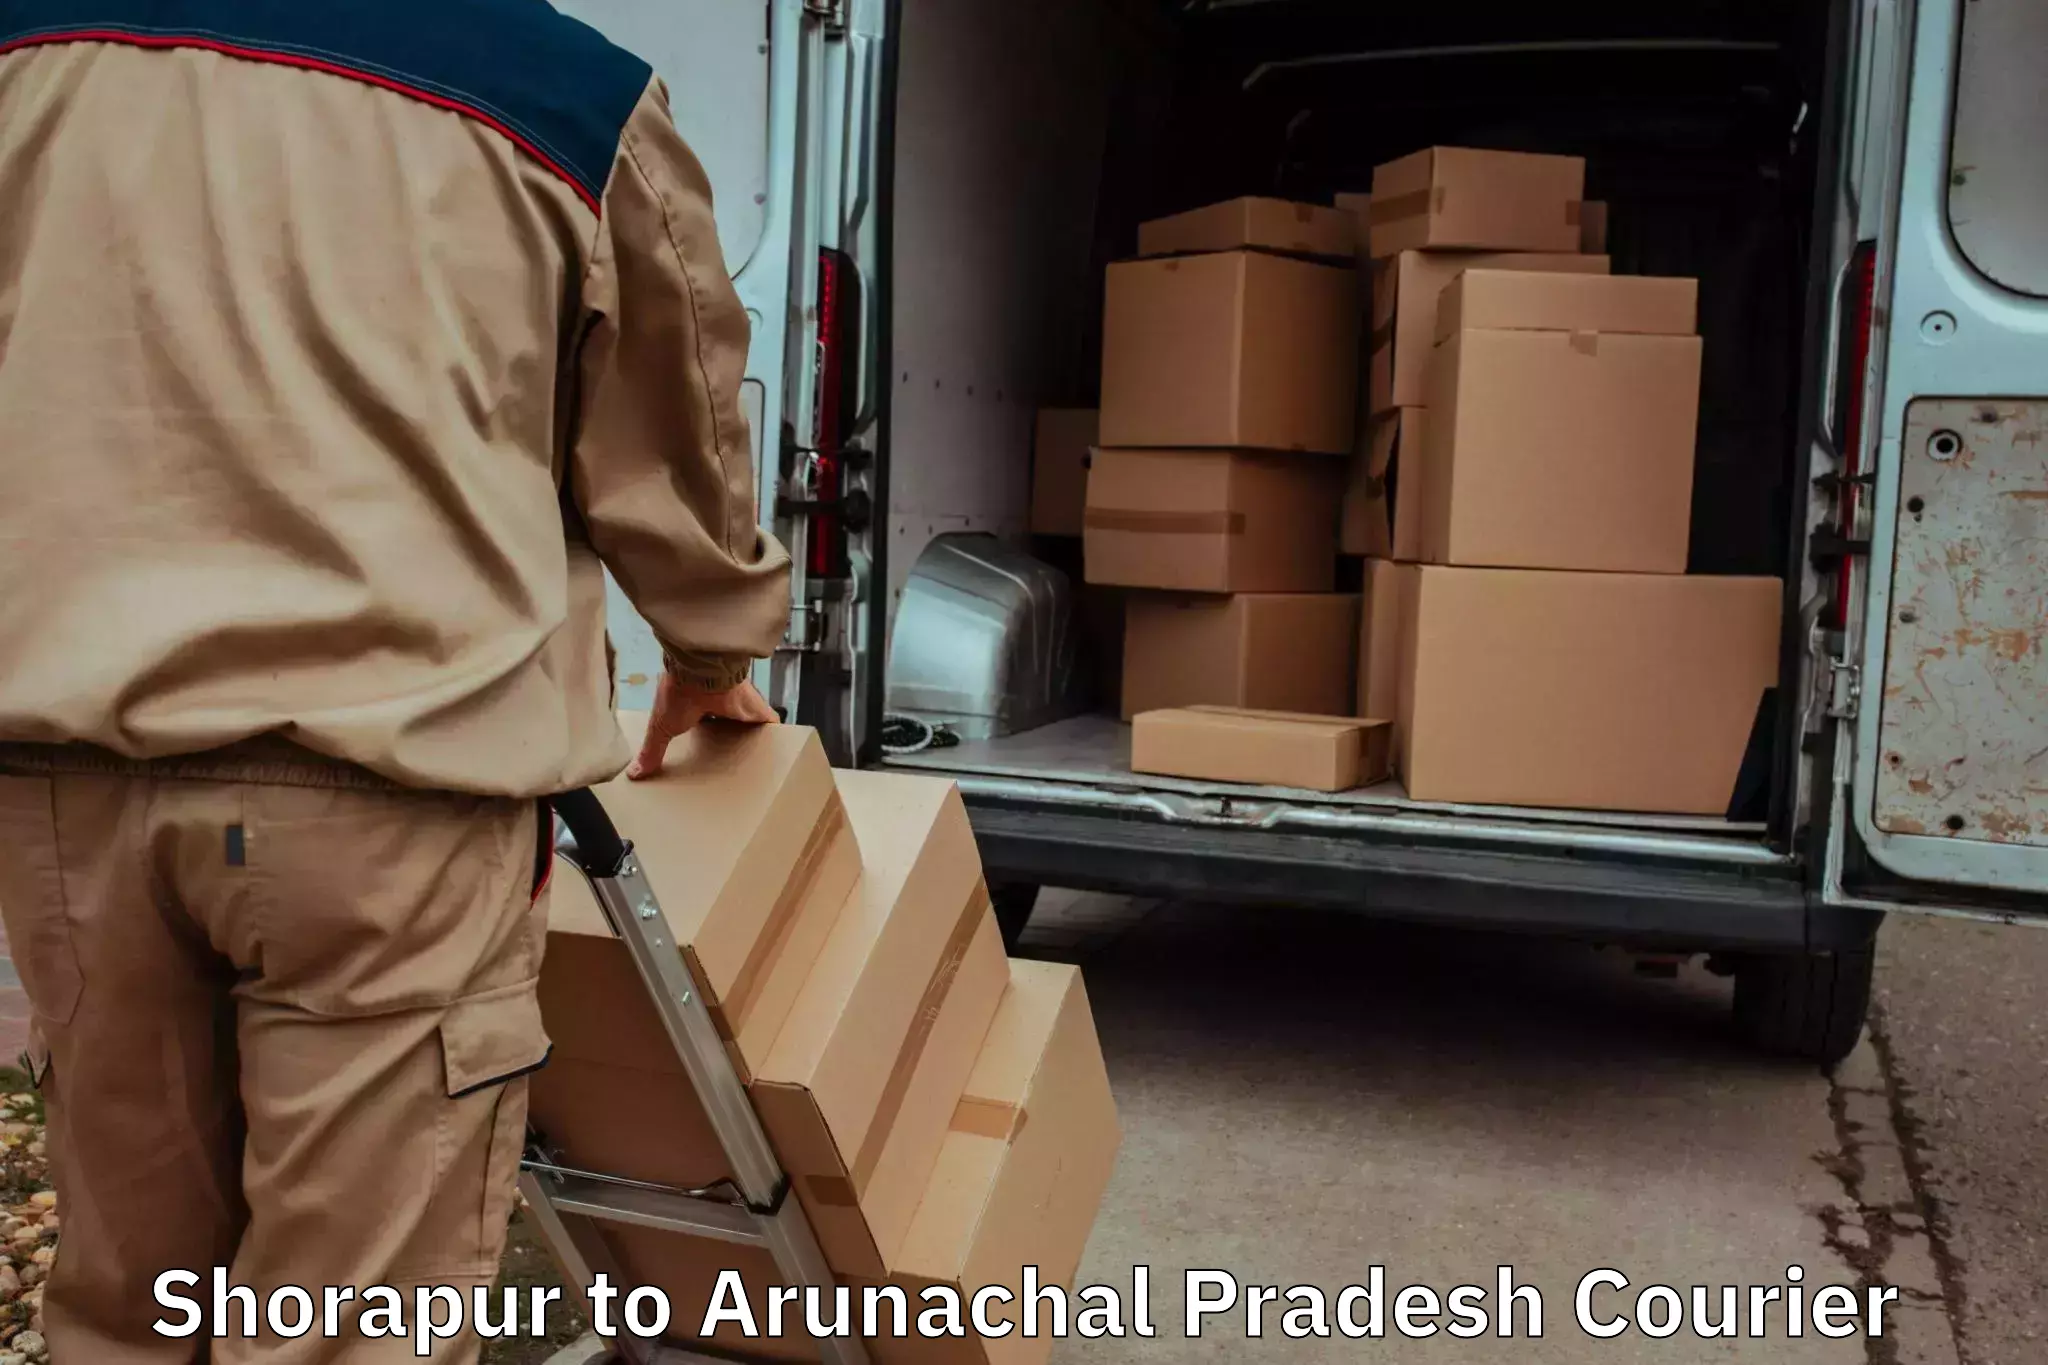 Furniture transport specialists Shorapur to Arunachal Pradesh